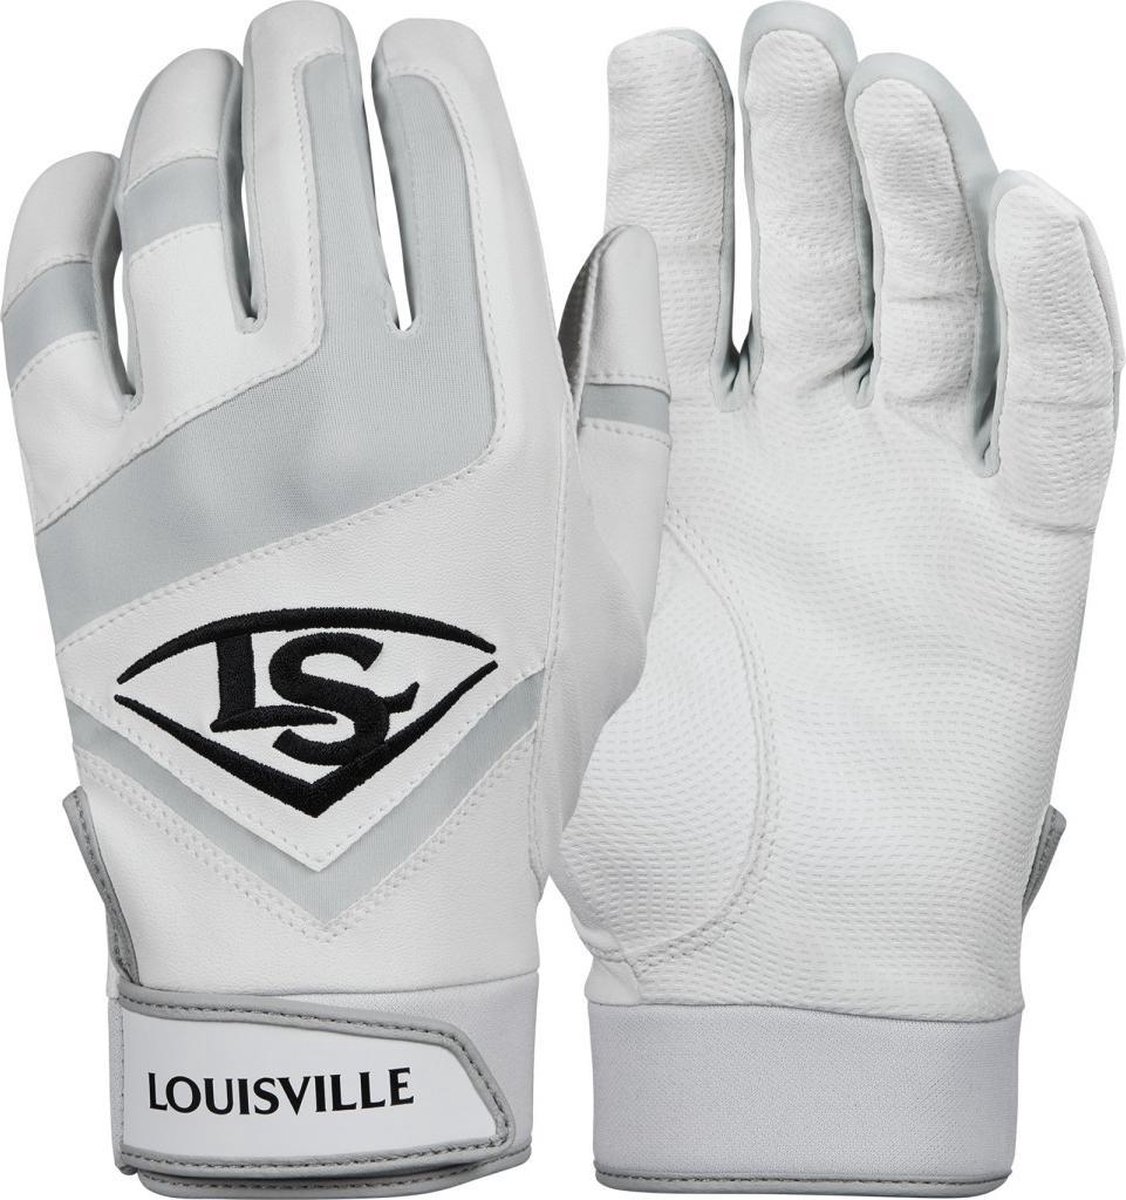 Louisville Slugger Genuine Batting Gloves Wit Medium